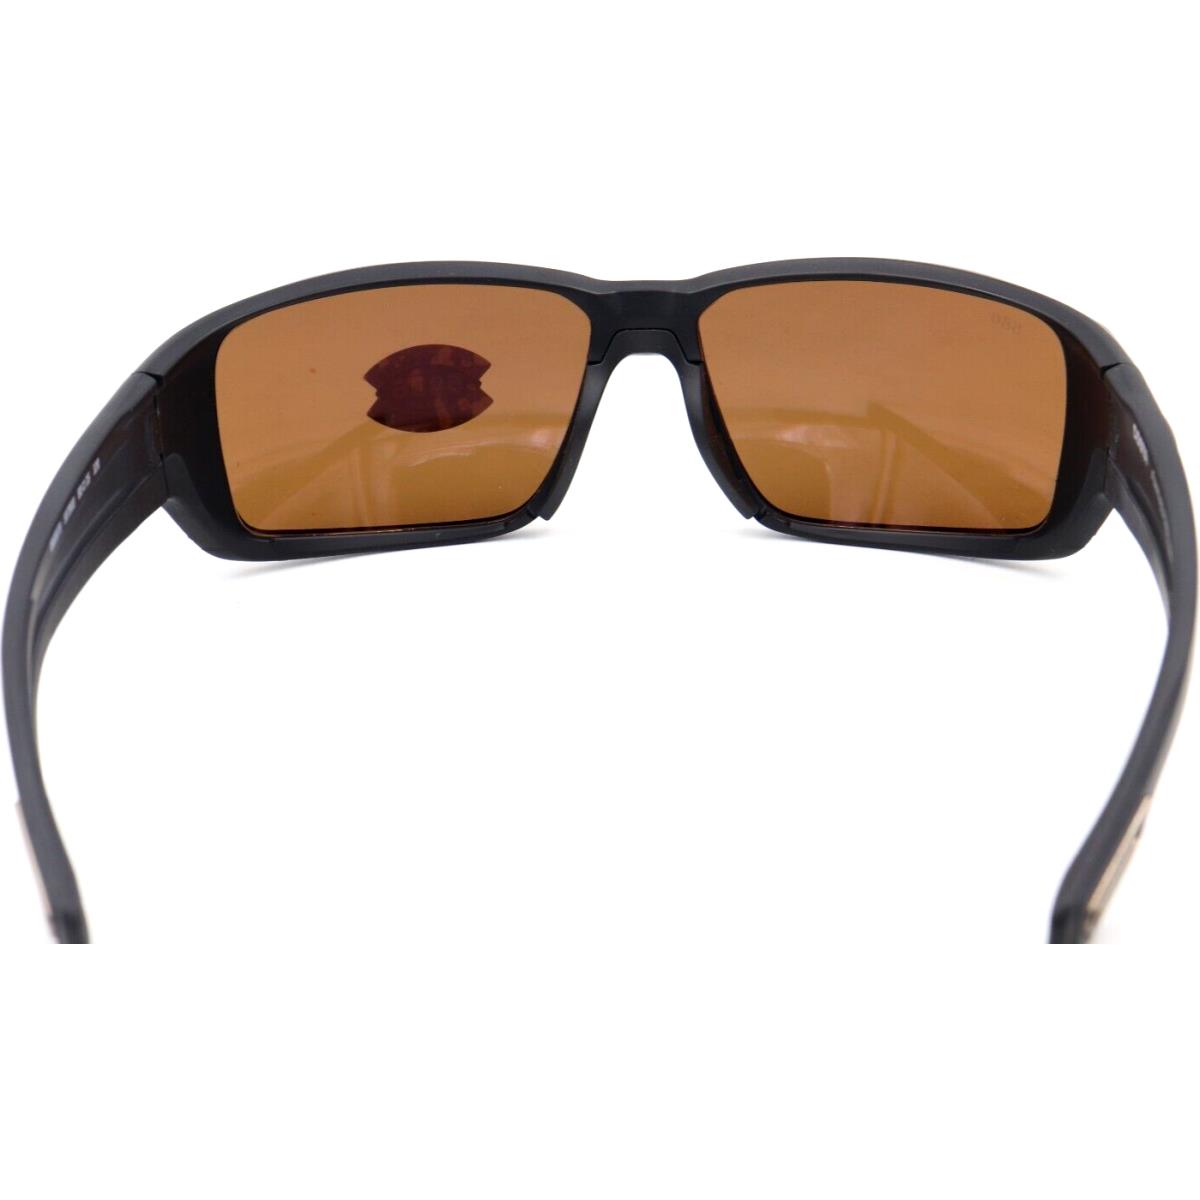 Costa Del Mar sunglasses Fantail PRO - 11 matte black Frame, Copper / silver Lens 1